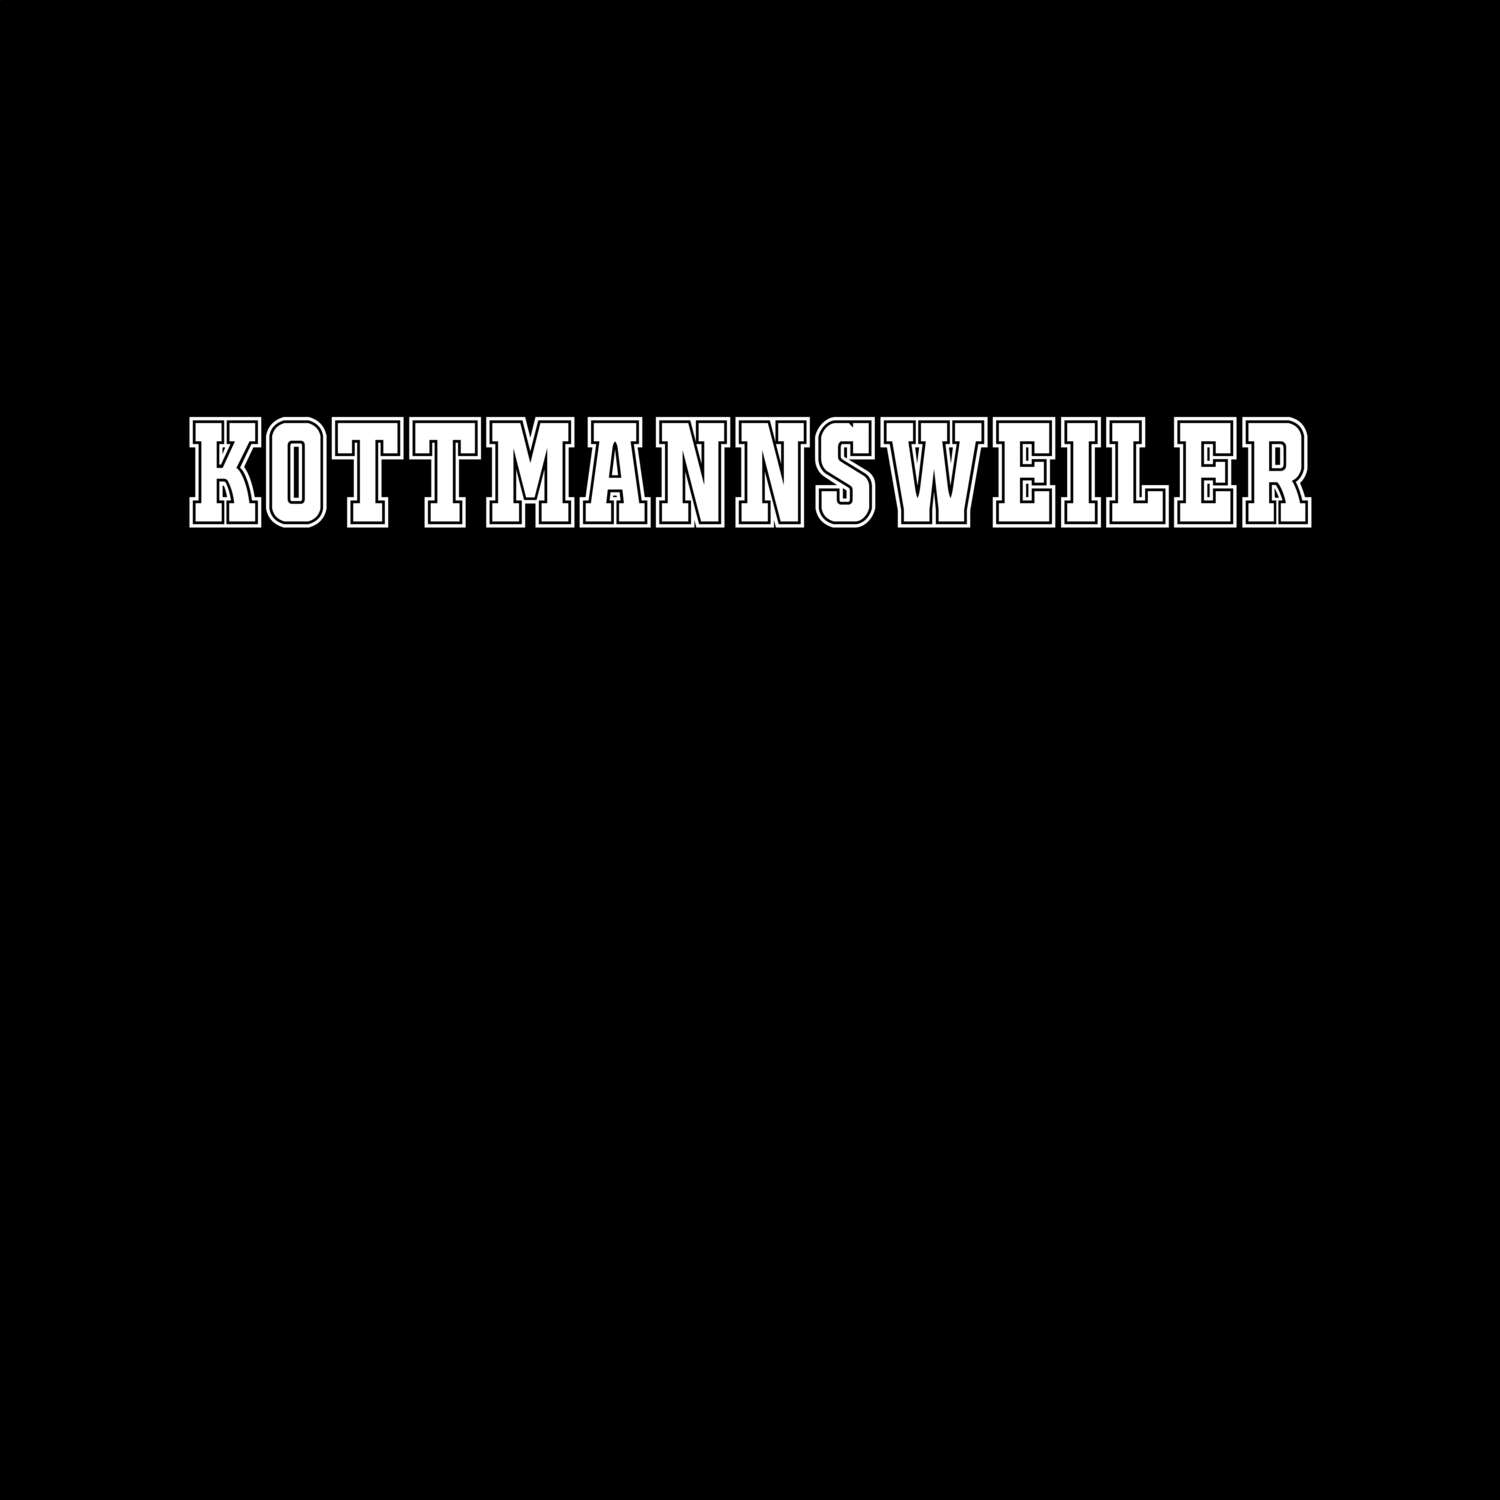 Kottmannsweiler T-Shirt »Classic«